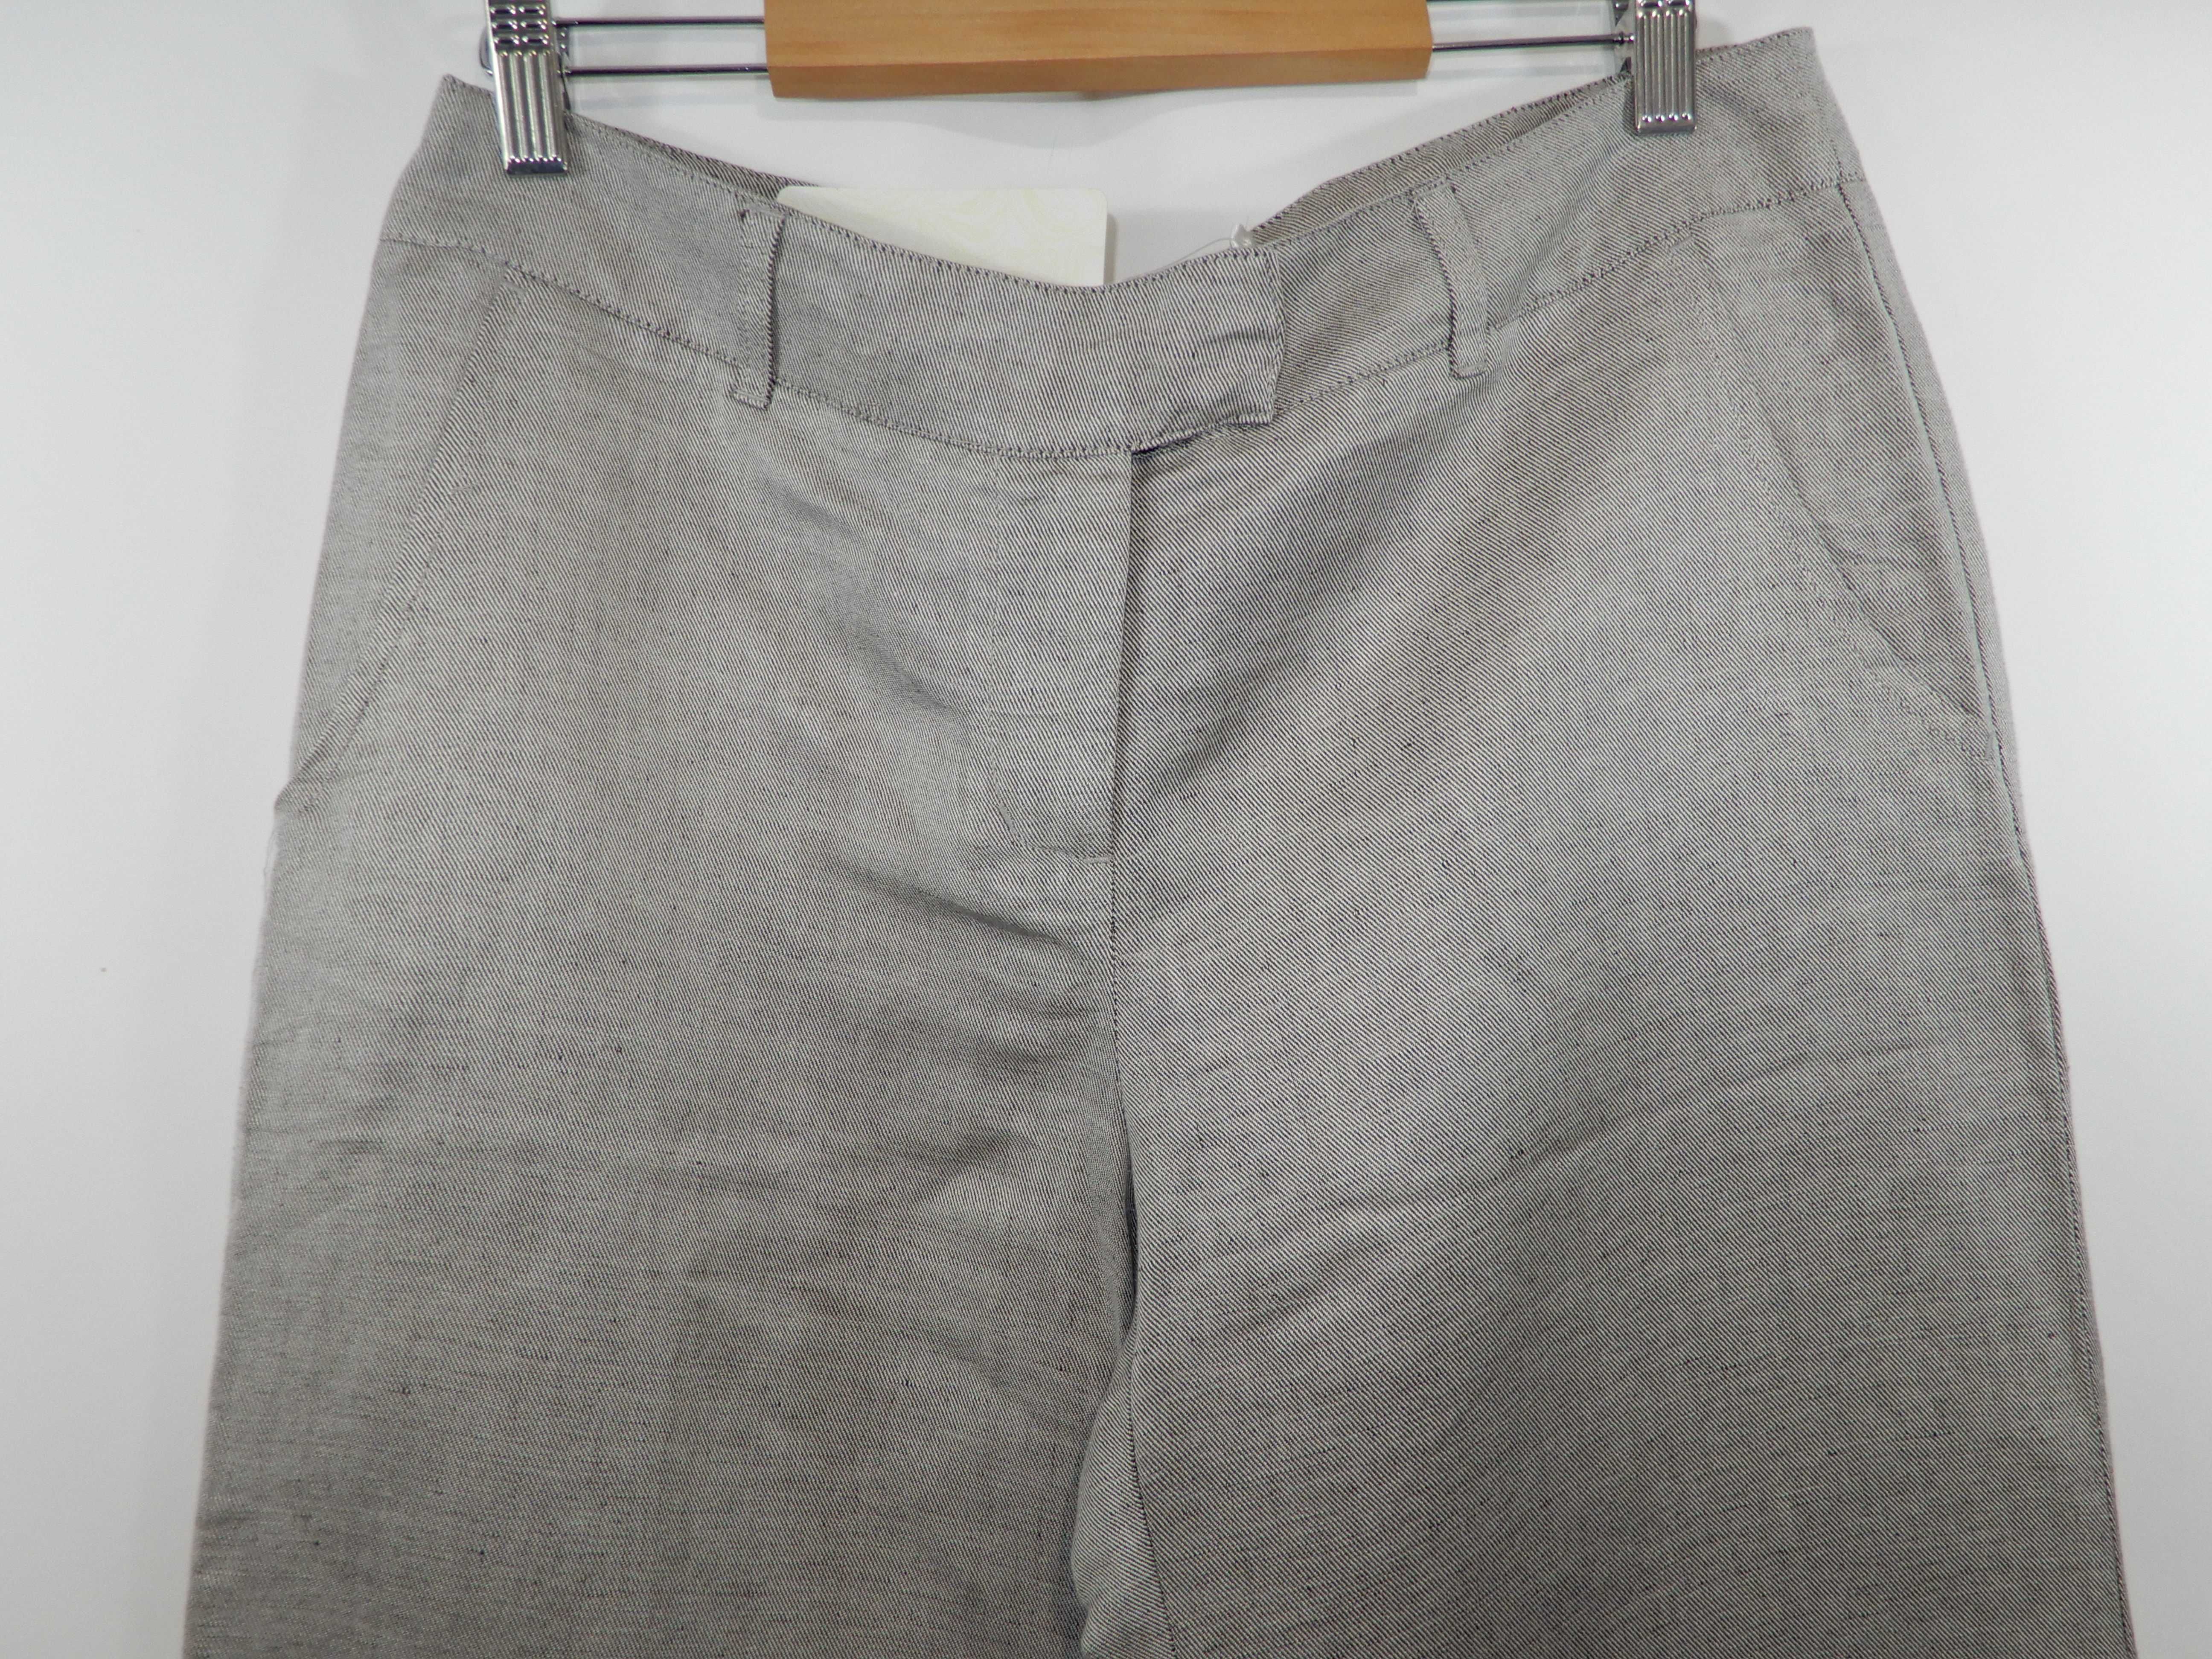 Długie spodnie casual z lnem szare szeroka nogawka Top Secret 38 M